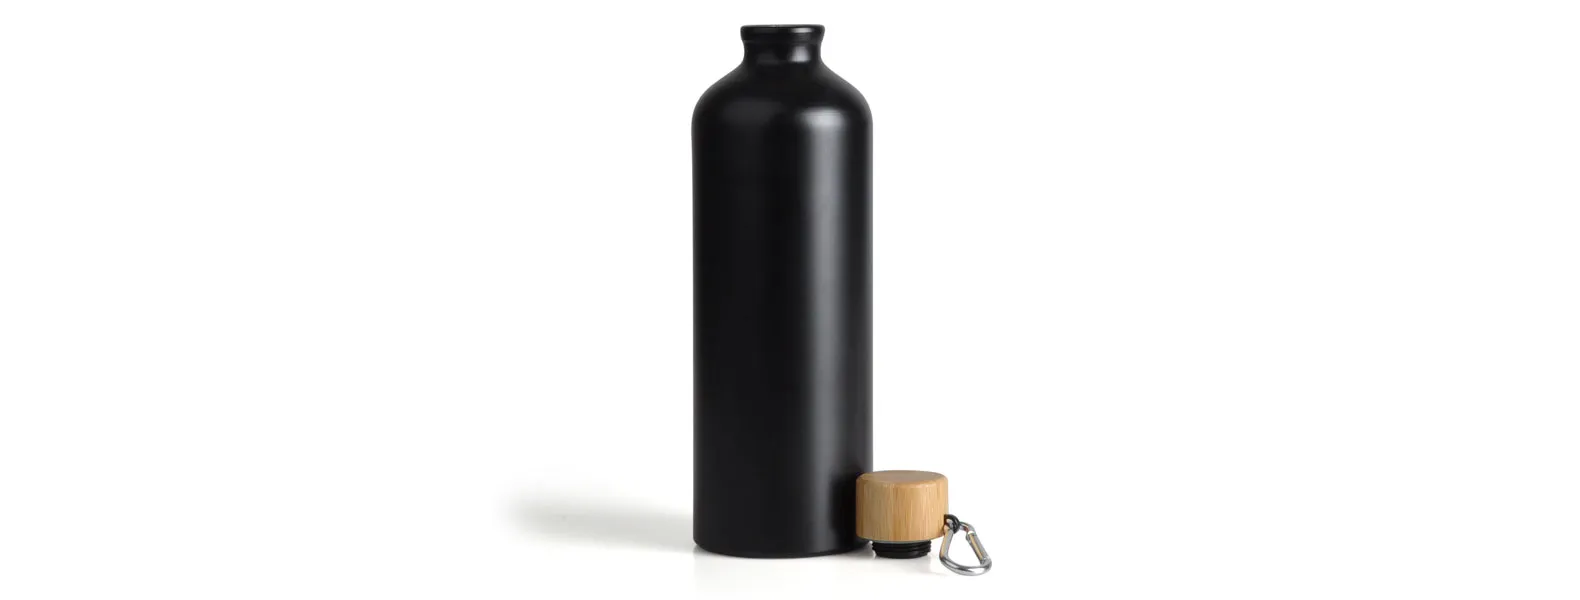 Conta com garrafa, caneca em cerâmica preta com capacidade 230 ml e fone de ouvido Bluetooth.